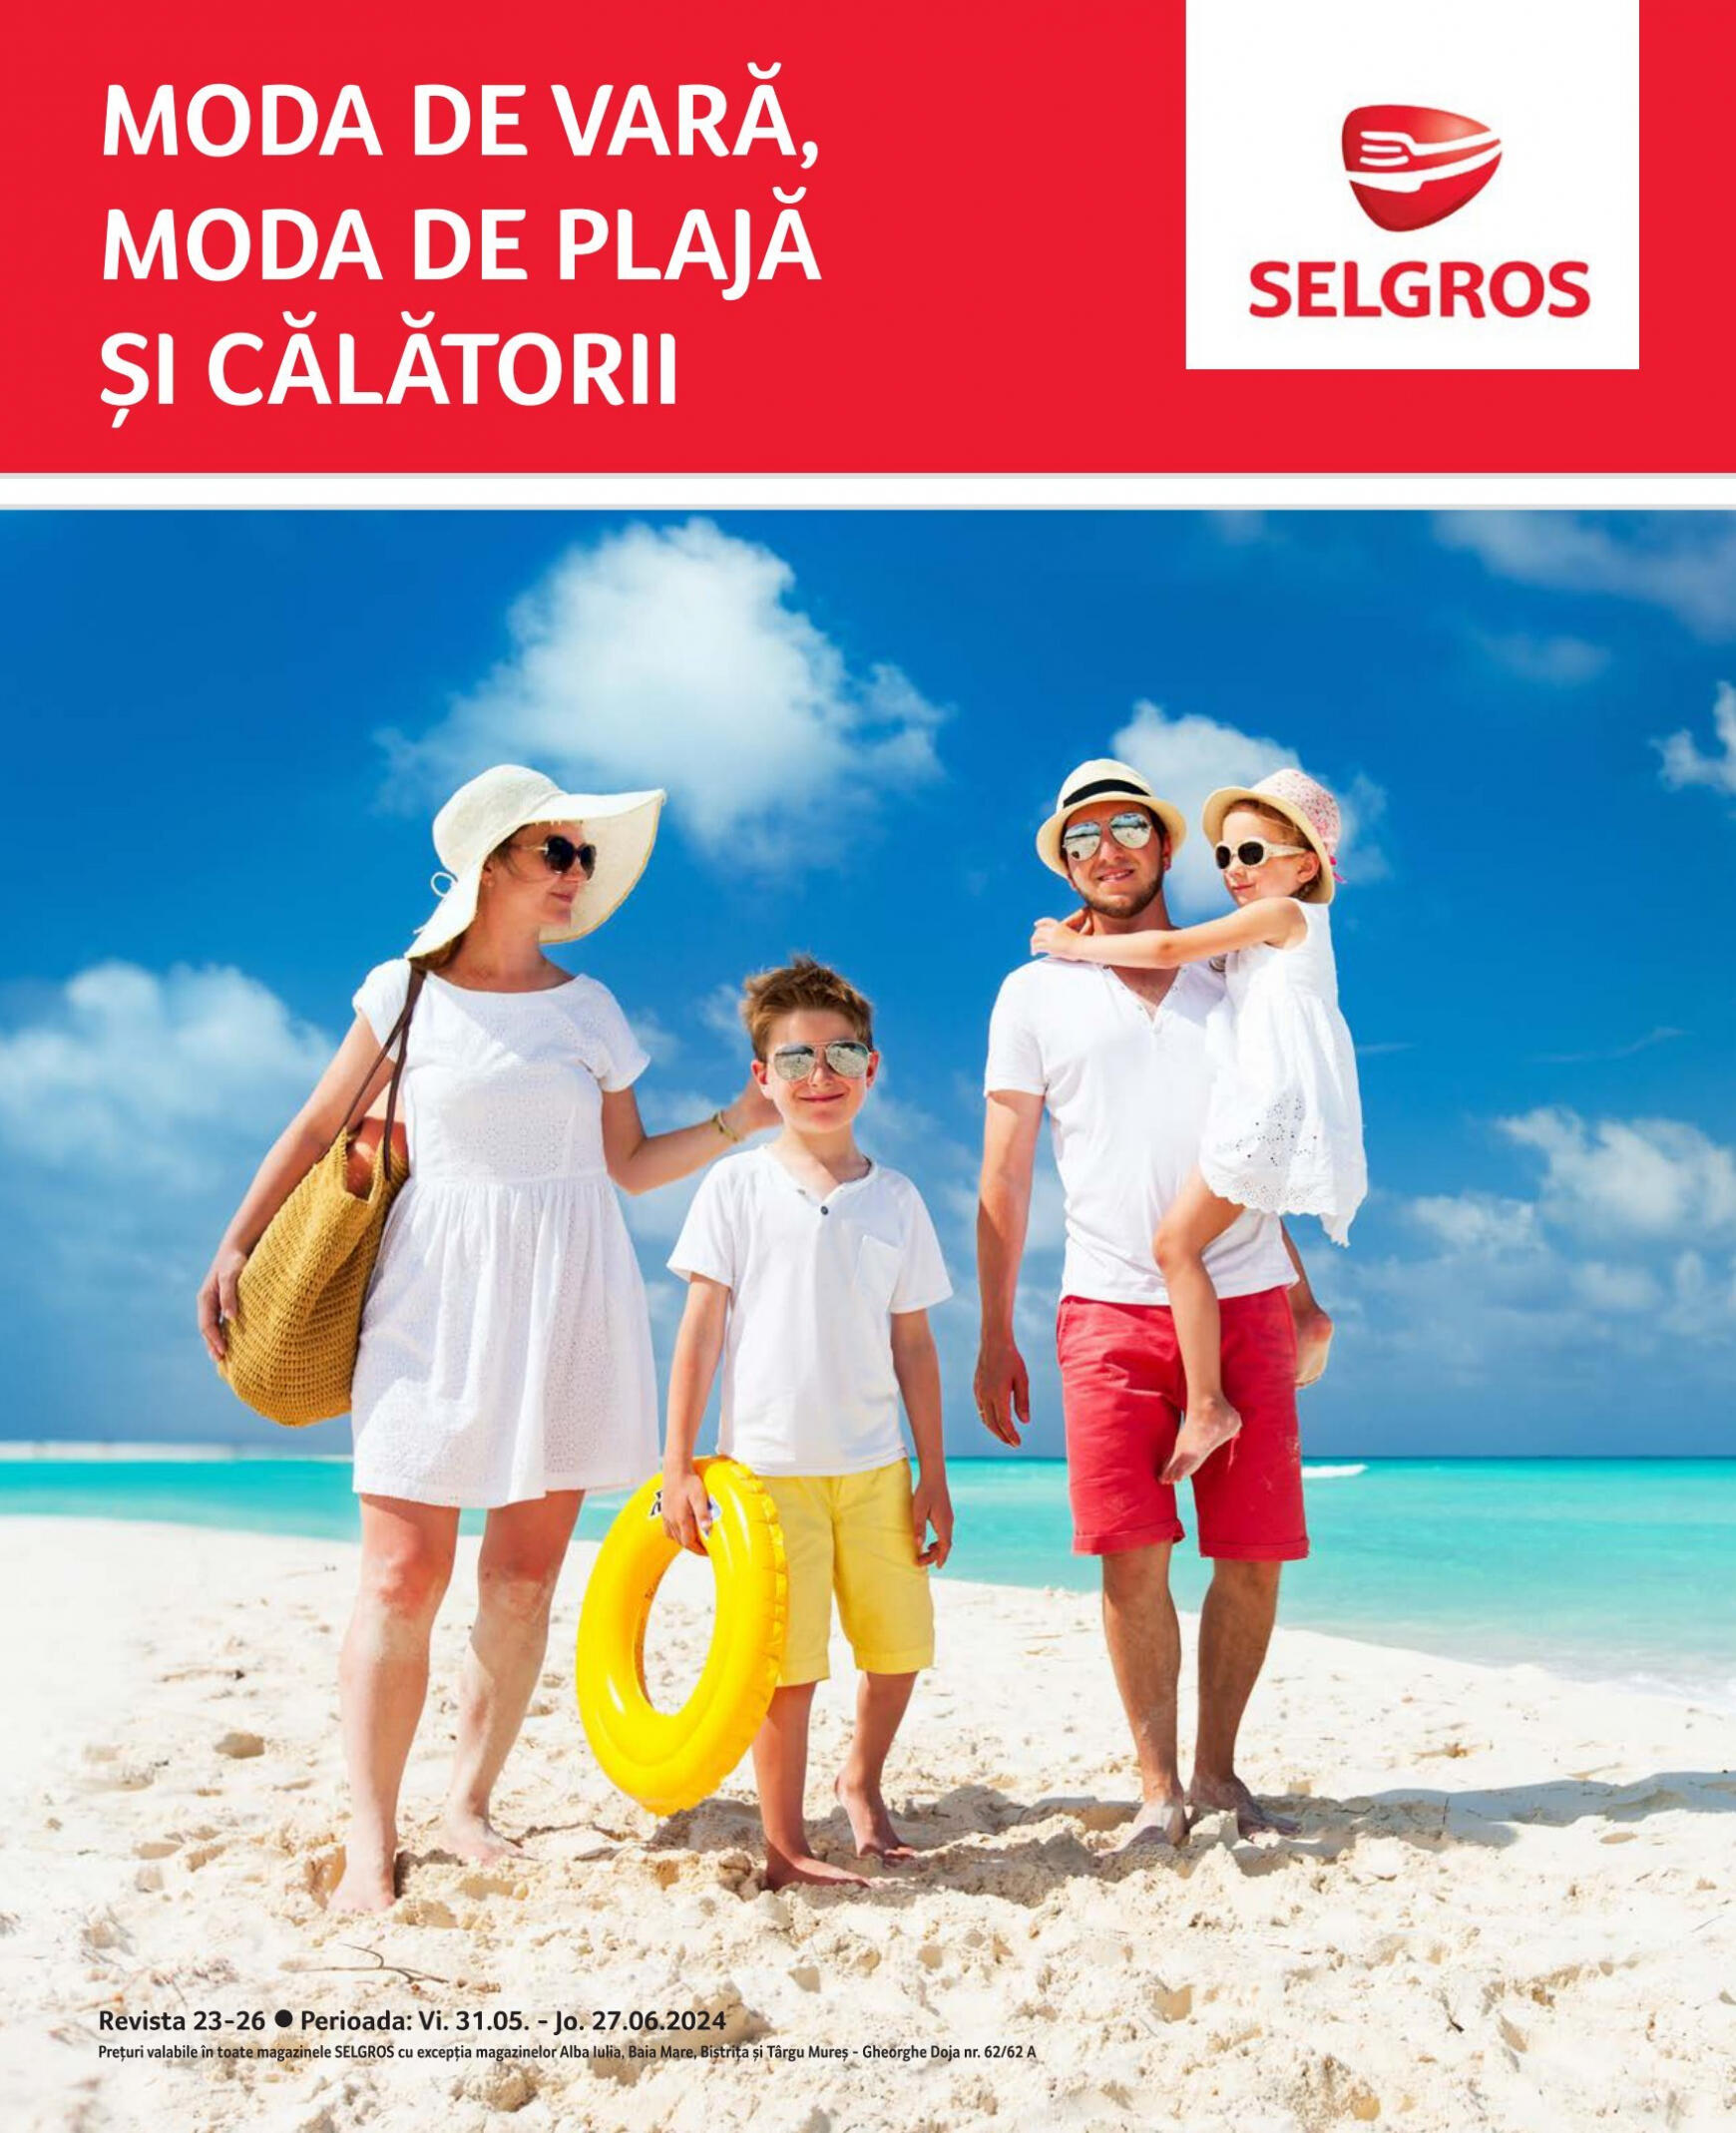 selgros - Catalog nou Selgros - Moda de Vară 31.05. - 27.06.